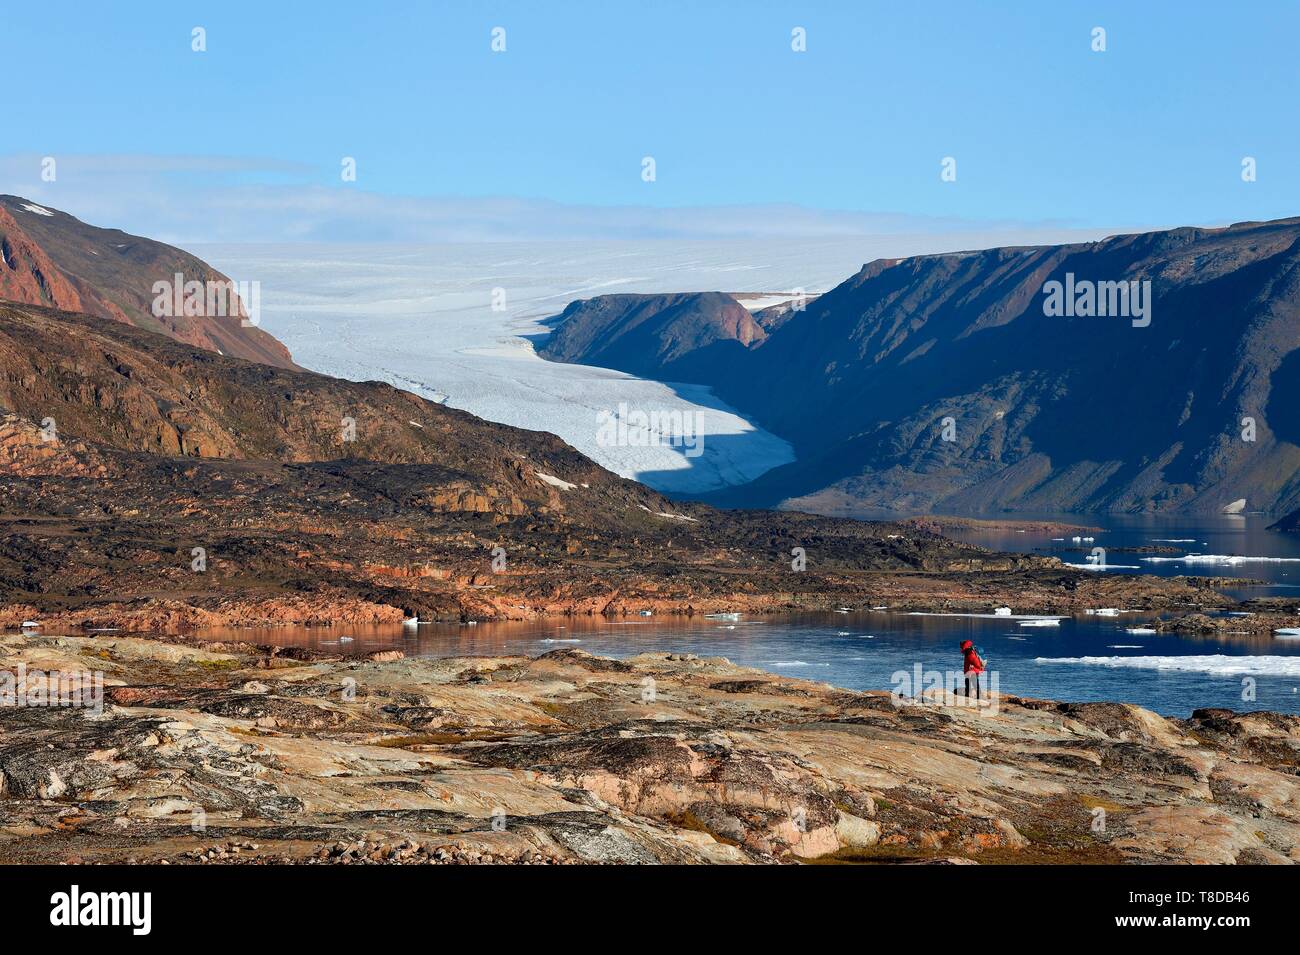 Grönland, Nordwestküste, Smith Sound im Norden von Baffin Bay, inglefield Land, Ort der Etah, heute verlassenen Inuit Camp, die als Basis für mehrere Polarexpeditionen serviert. Stockfoto